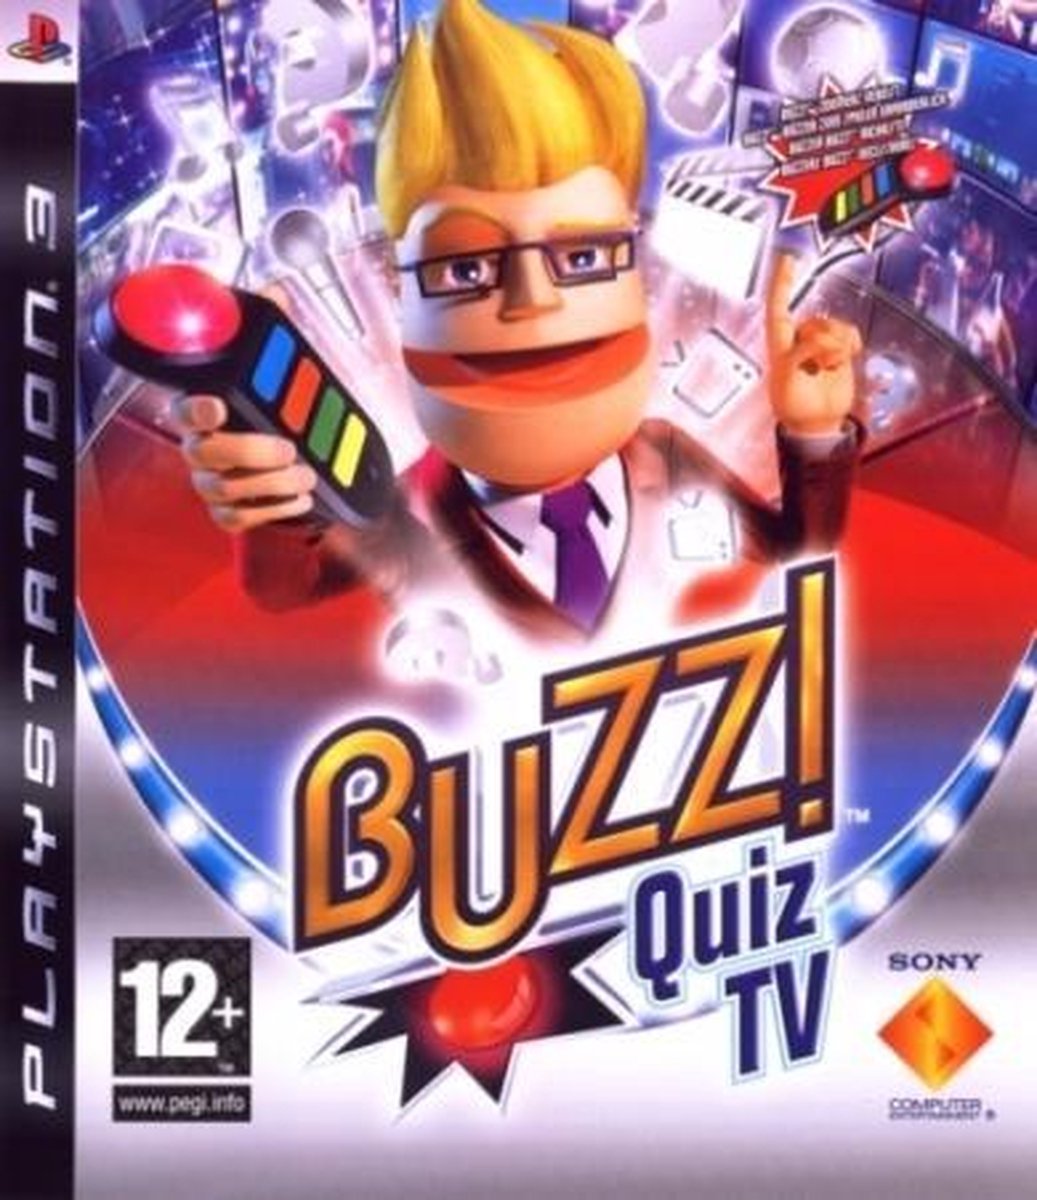 Buzz: Quiz TV | Games | bol.com